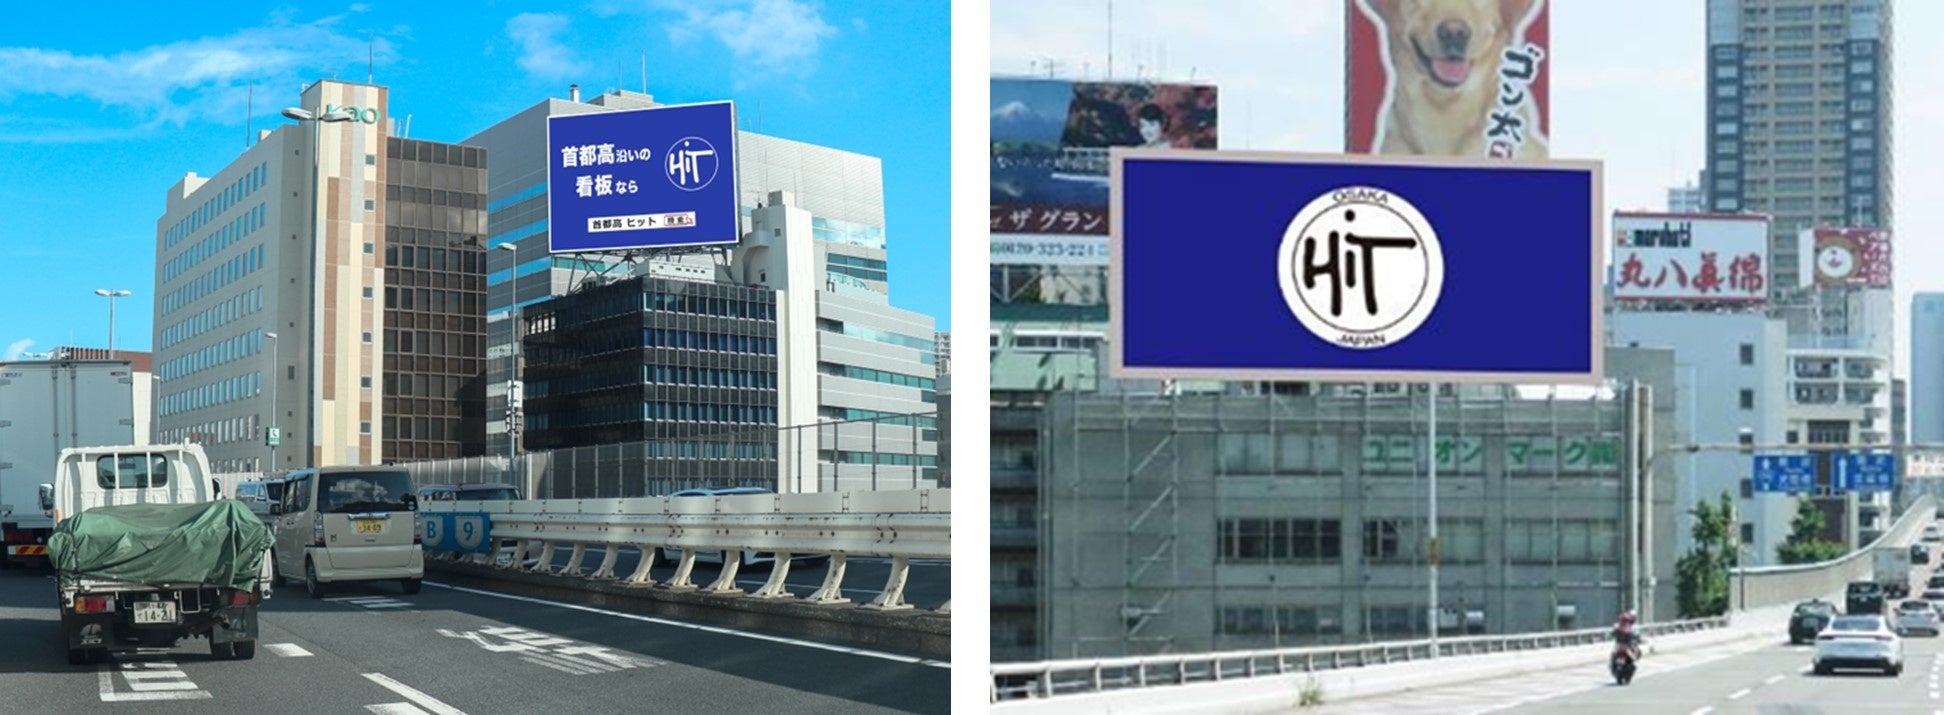 『首都高速デジタルLEDボード』（左）と『新御堂筋デジタルLEDボード』（右）